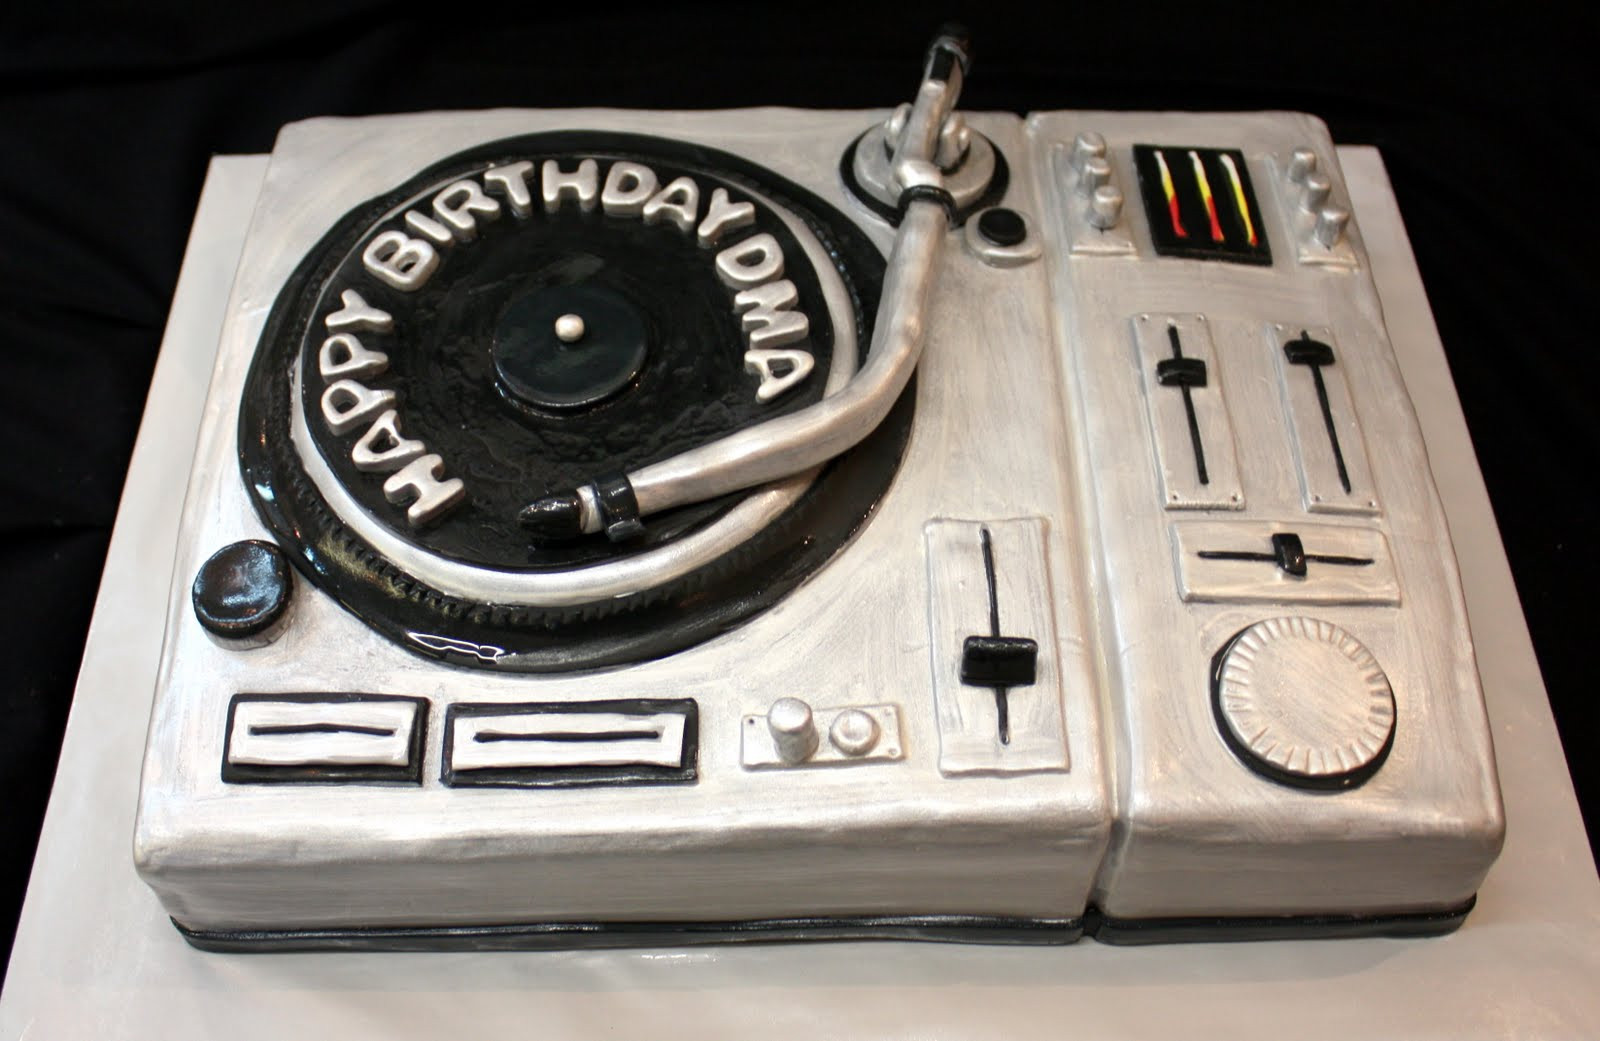 Dj Birthday Cake
 plete Deelite cupcakes DJ cake